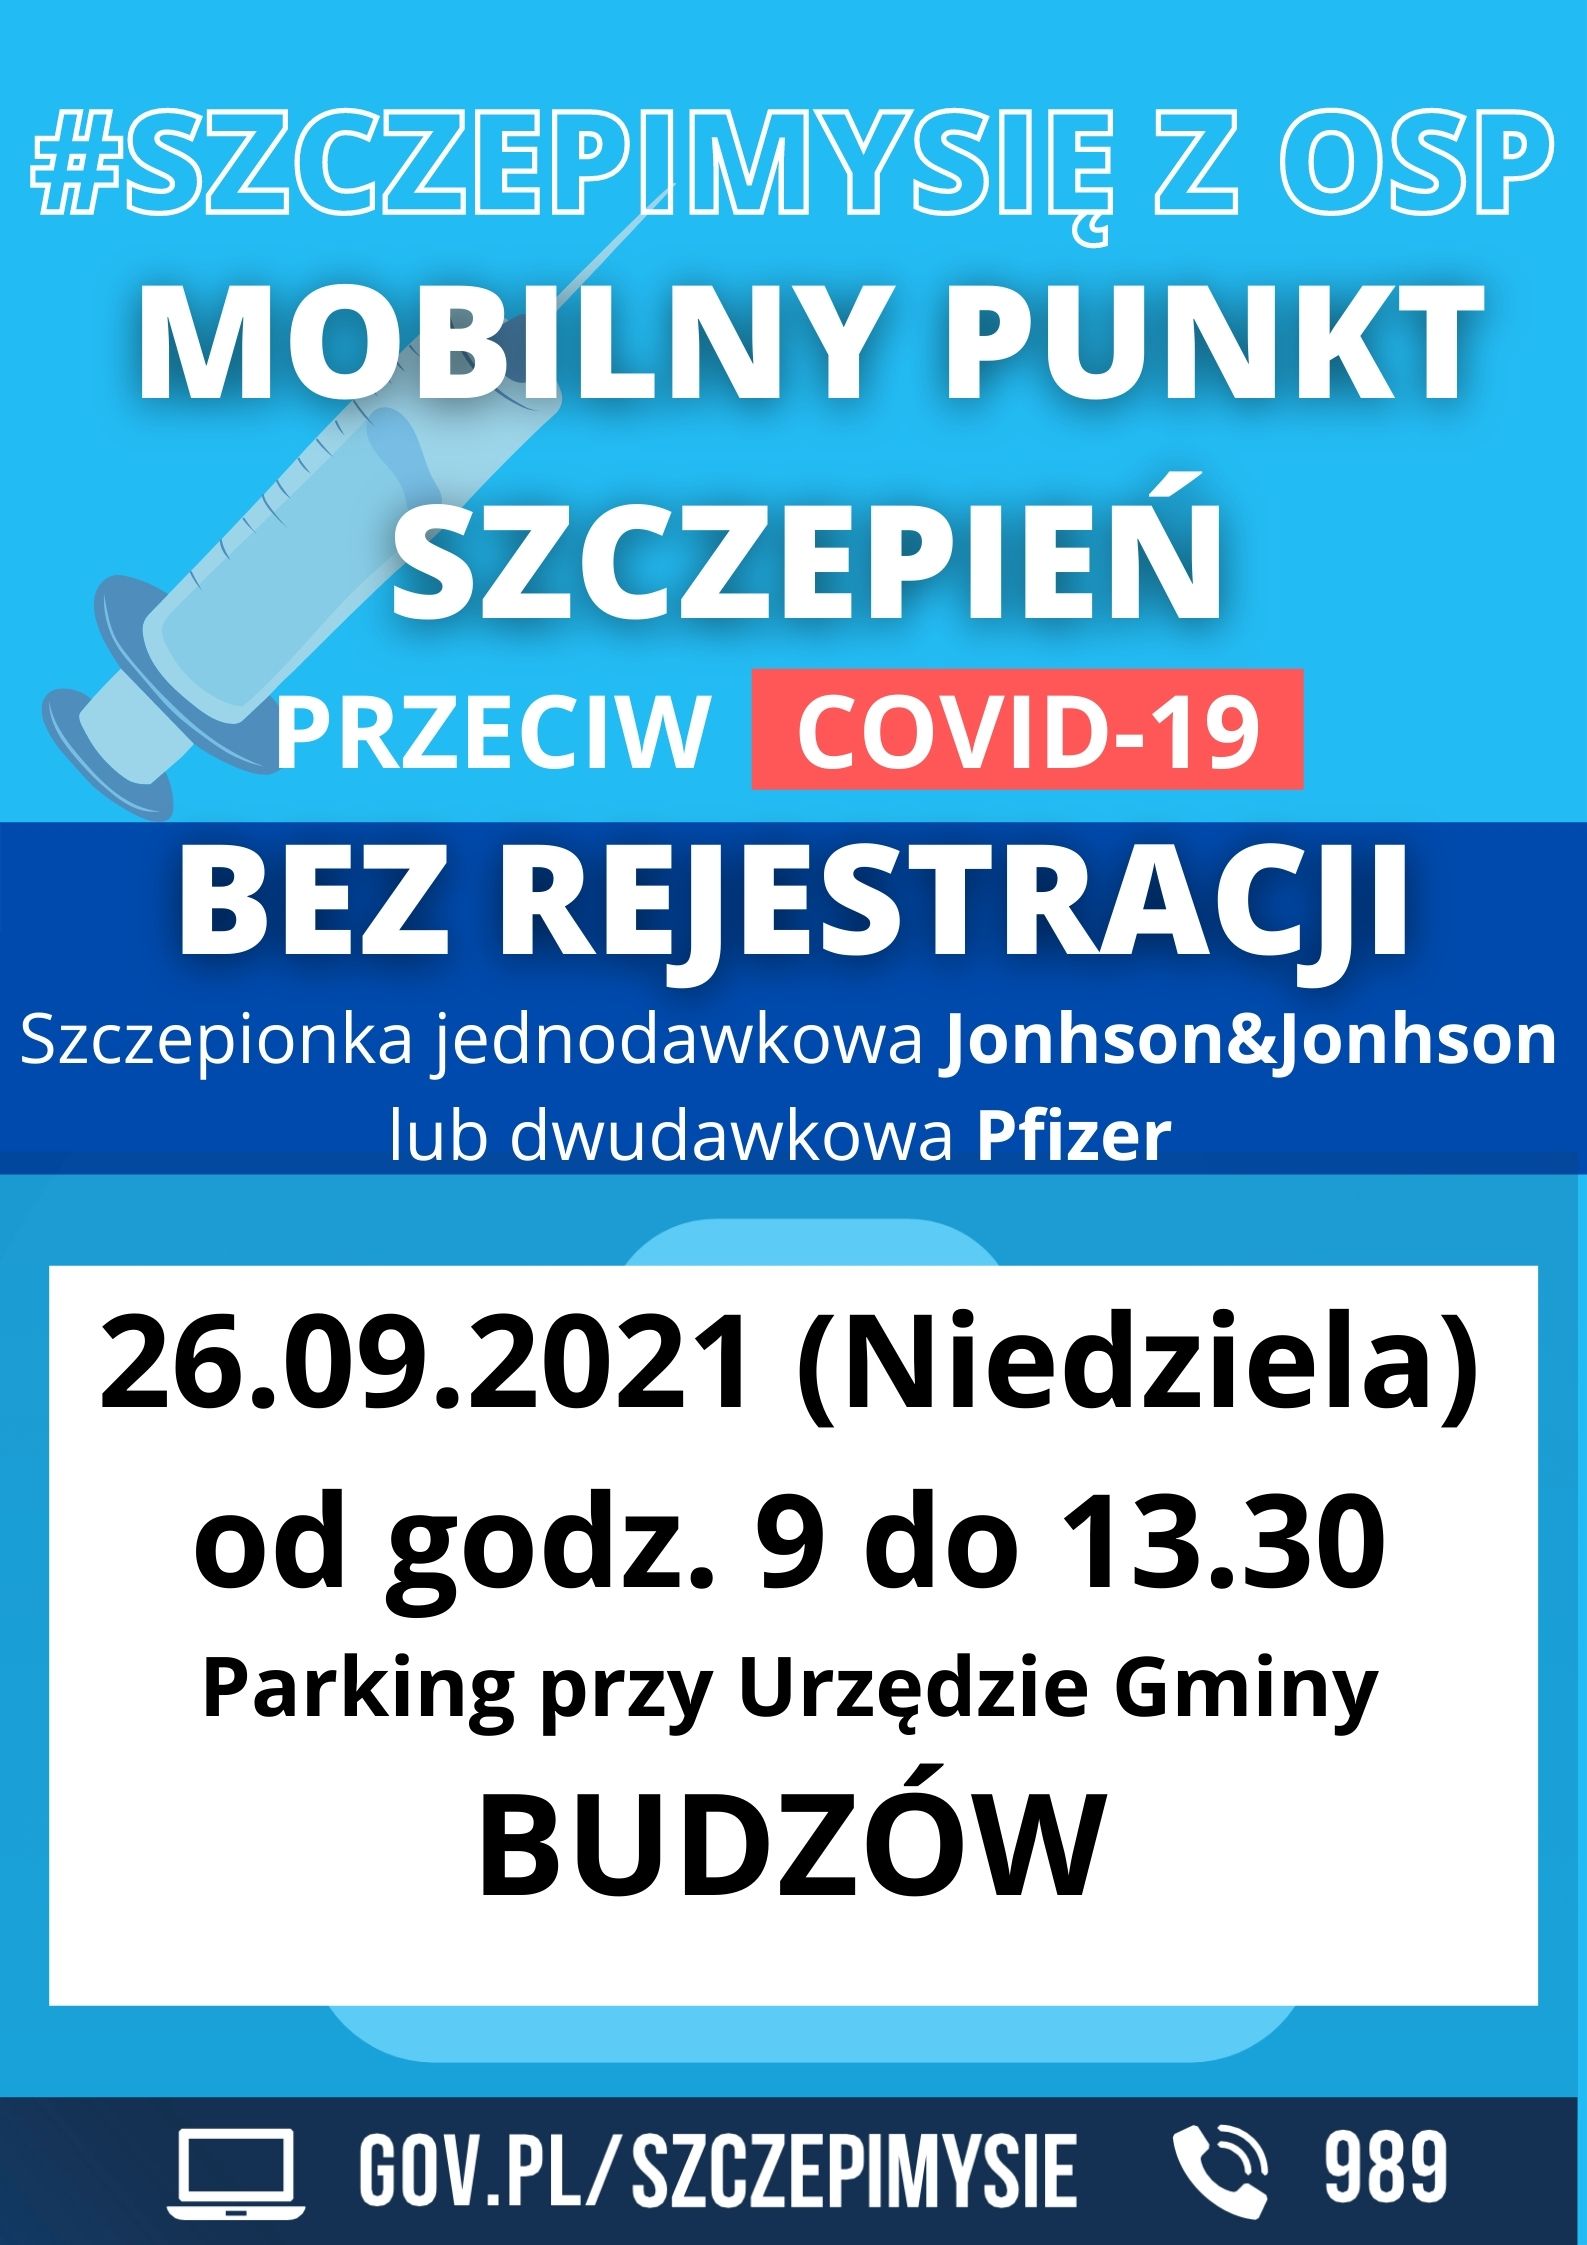 Plakat promujący mobilny punkt szczepień.